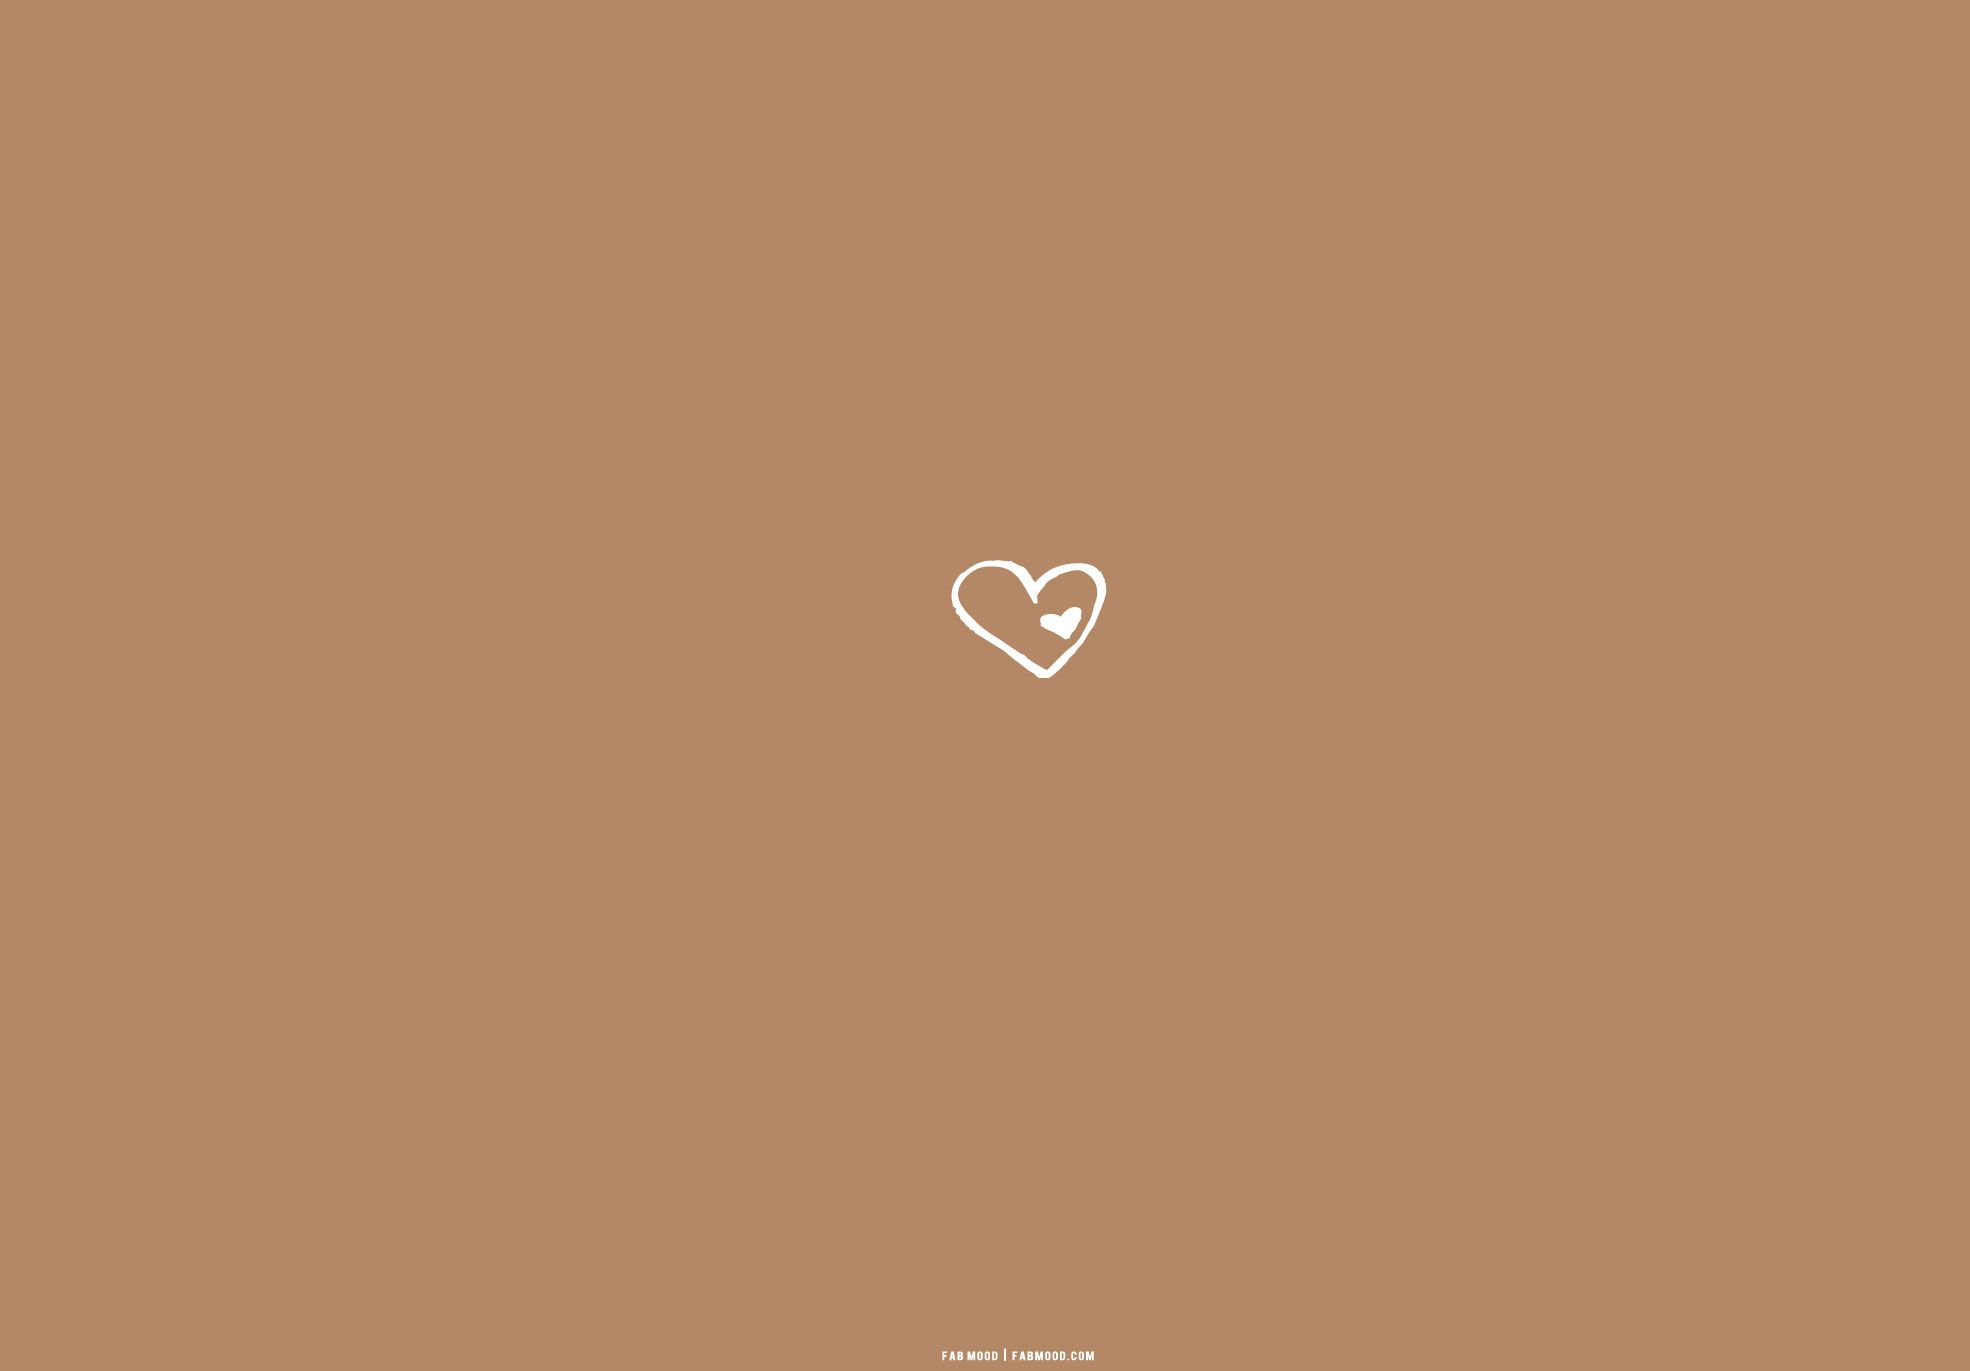  Erfolg Hintergrundbild 1970x1371. Brown Aesthetic Wallpaper for Laptop : Heart on Heart